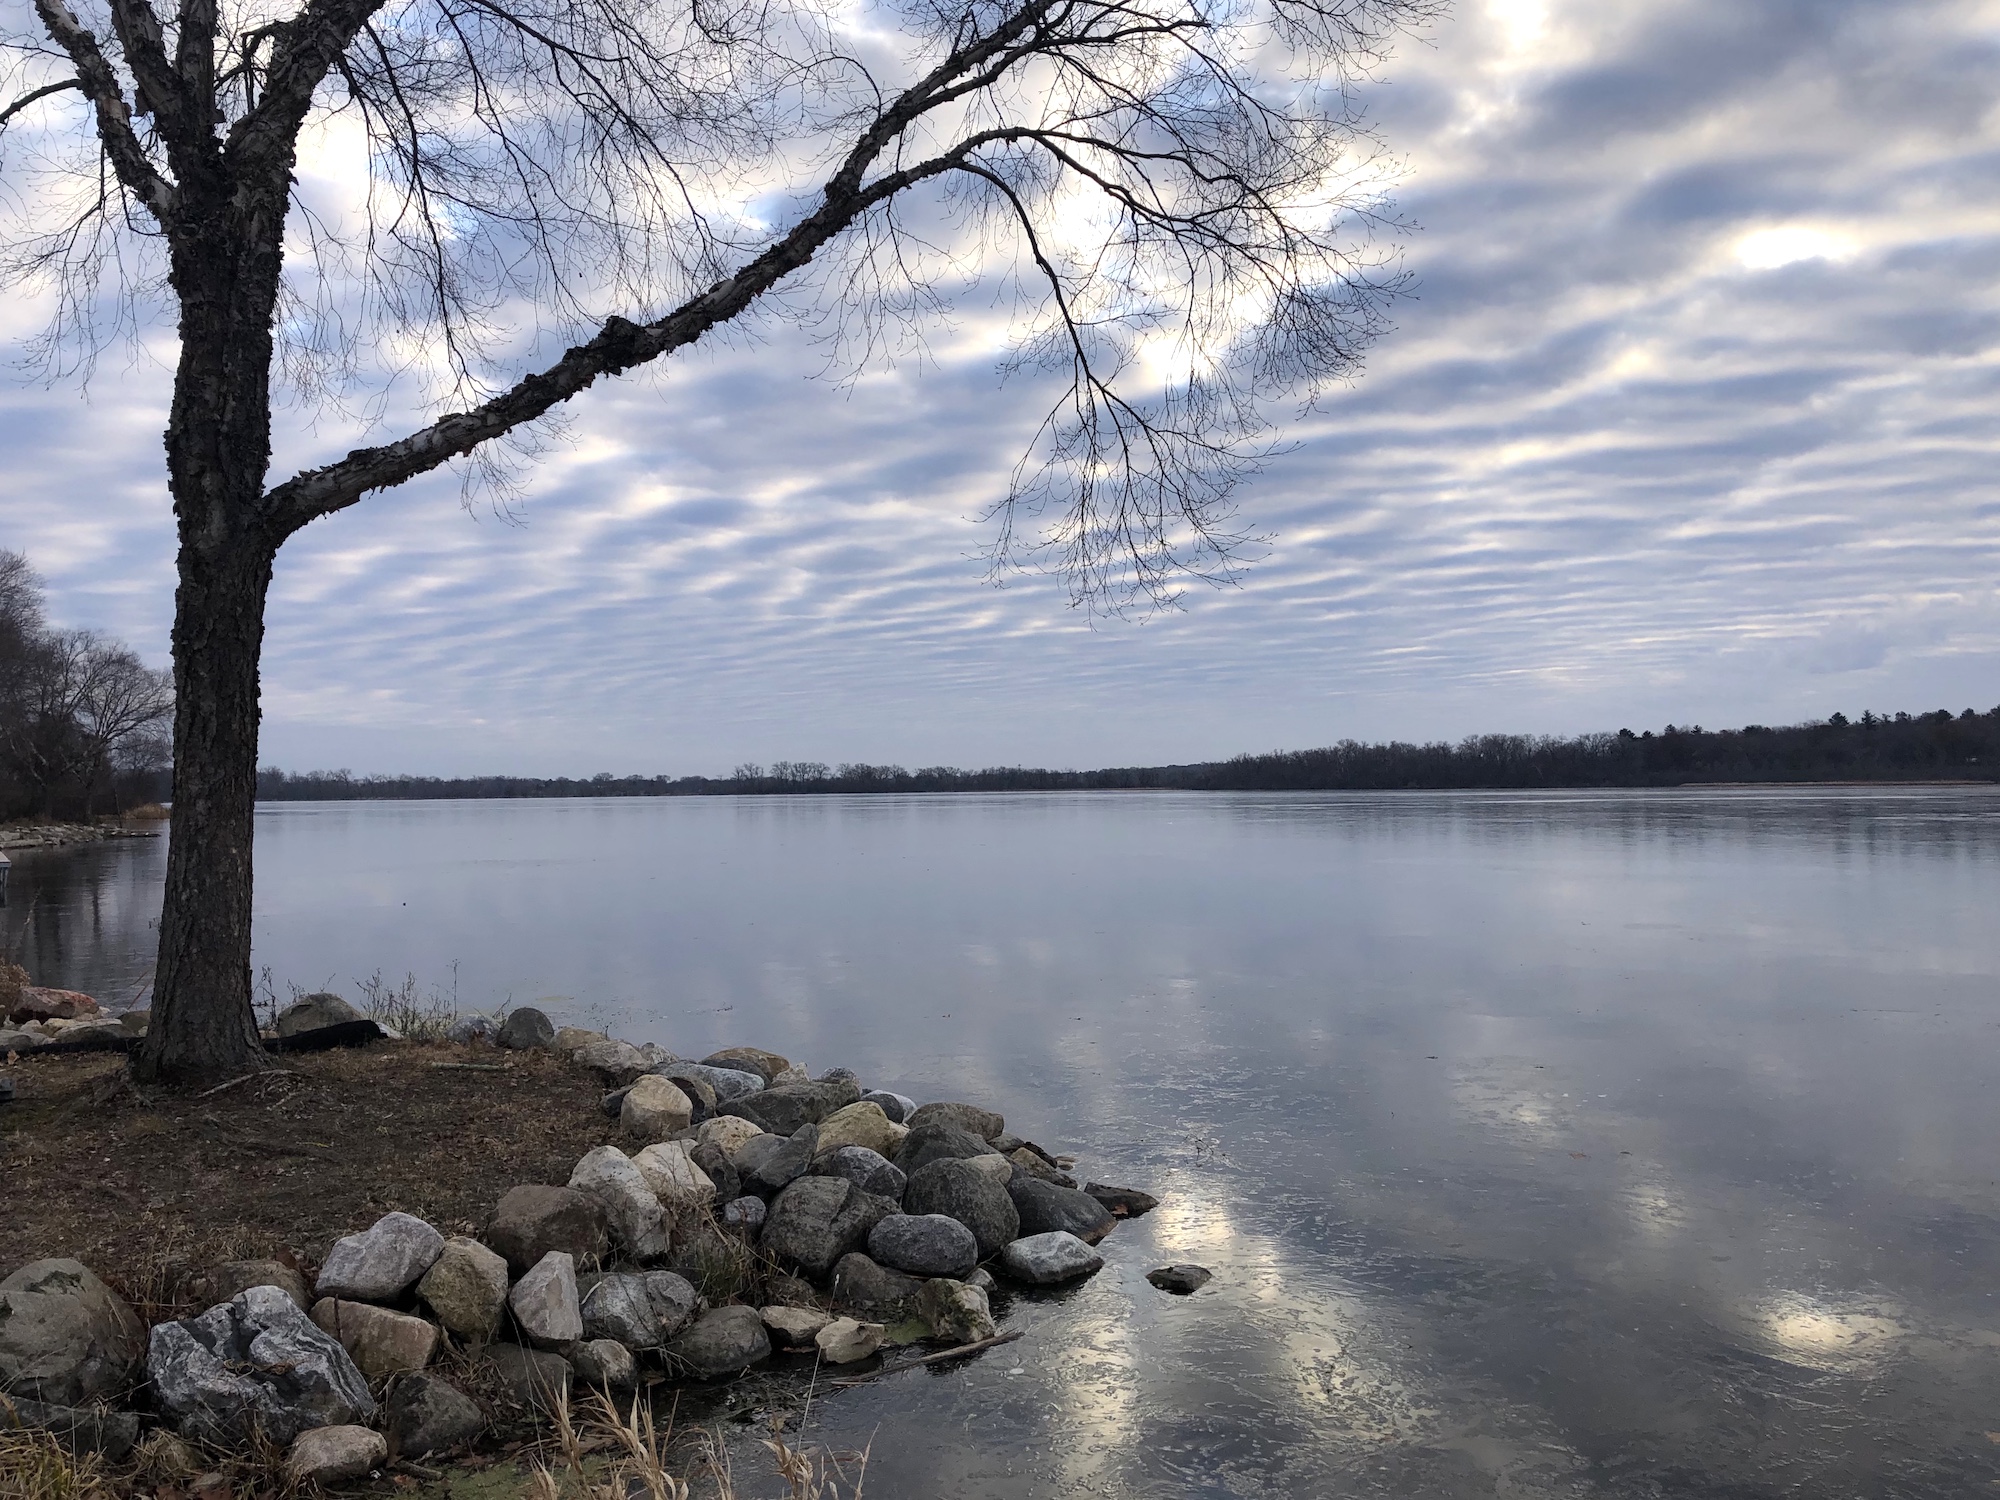 Lake Wingra on December 7, 2019.